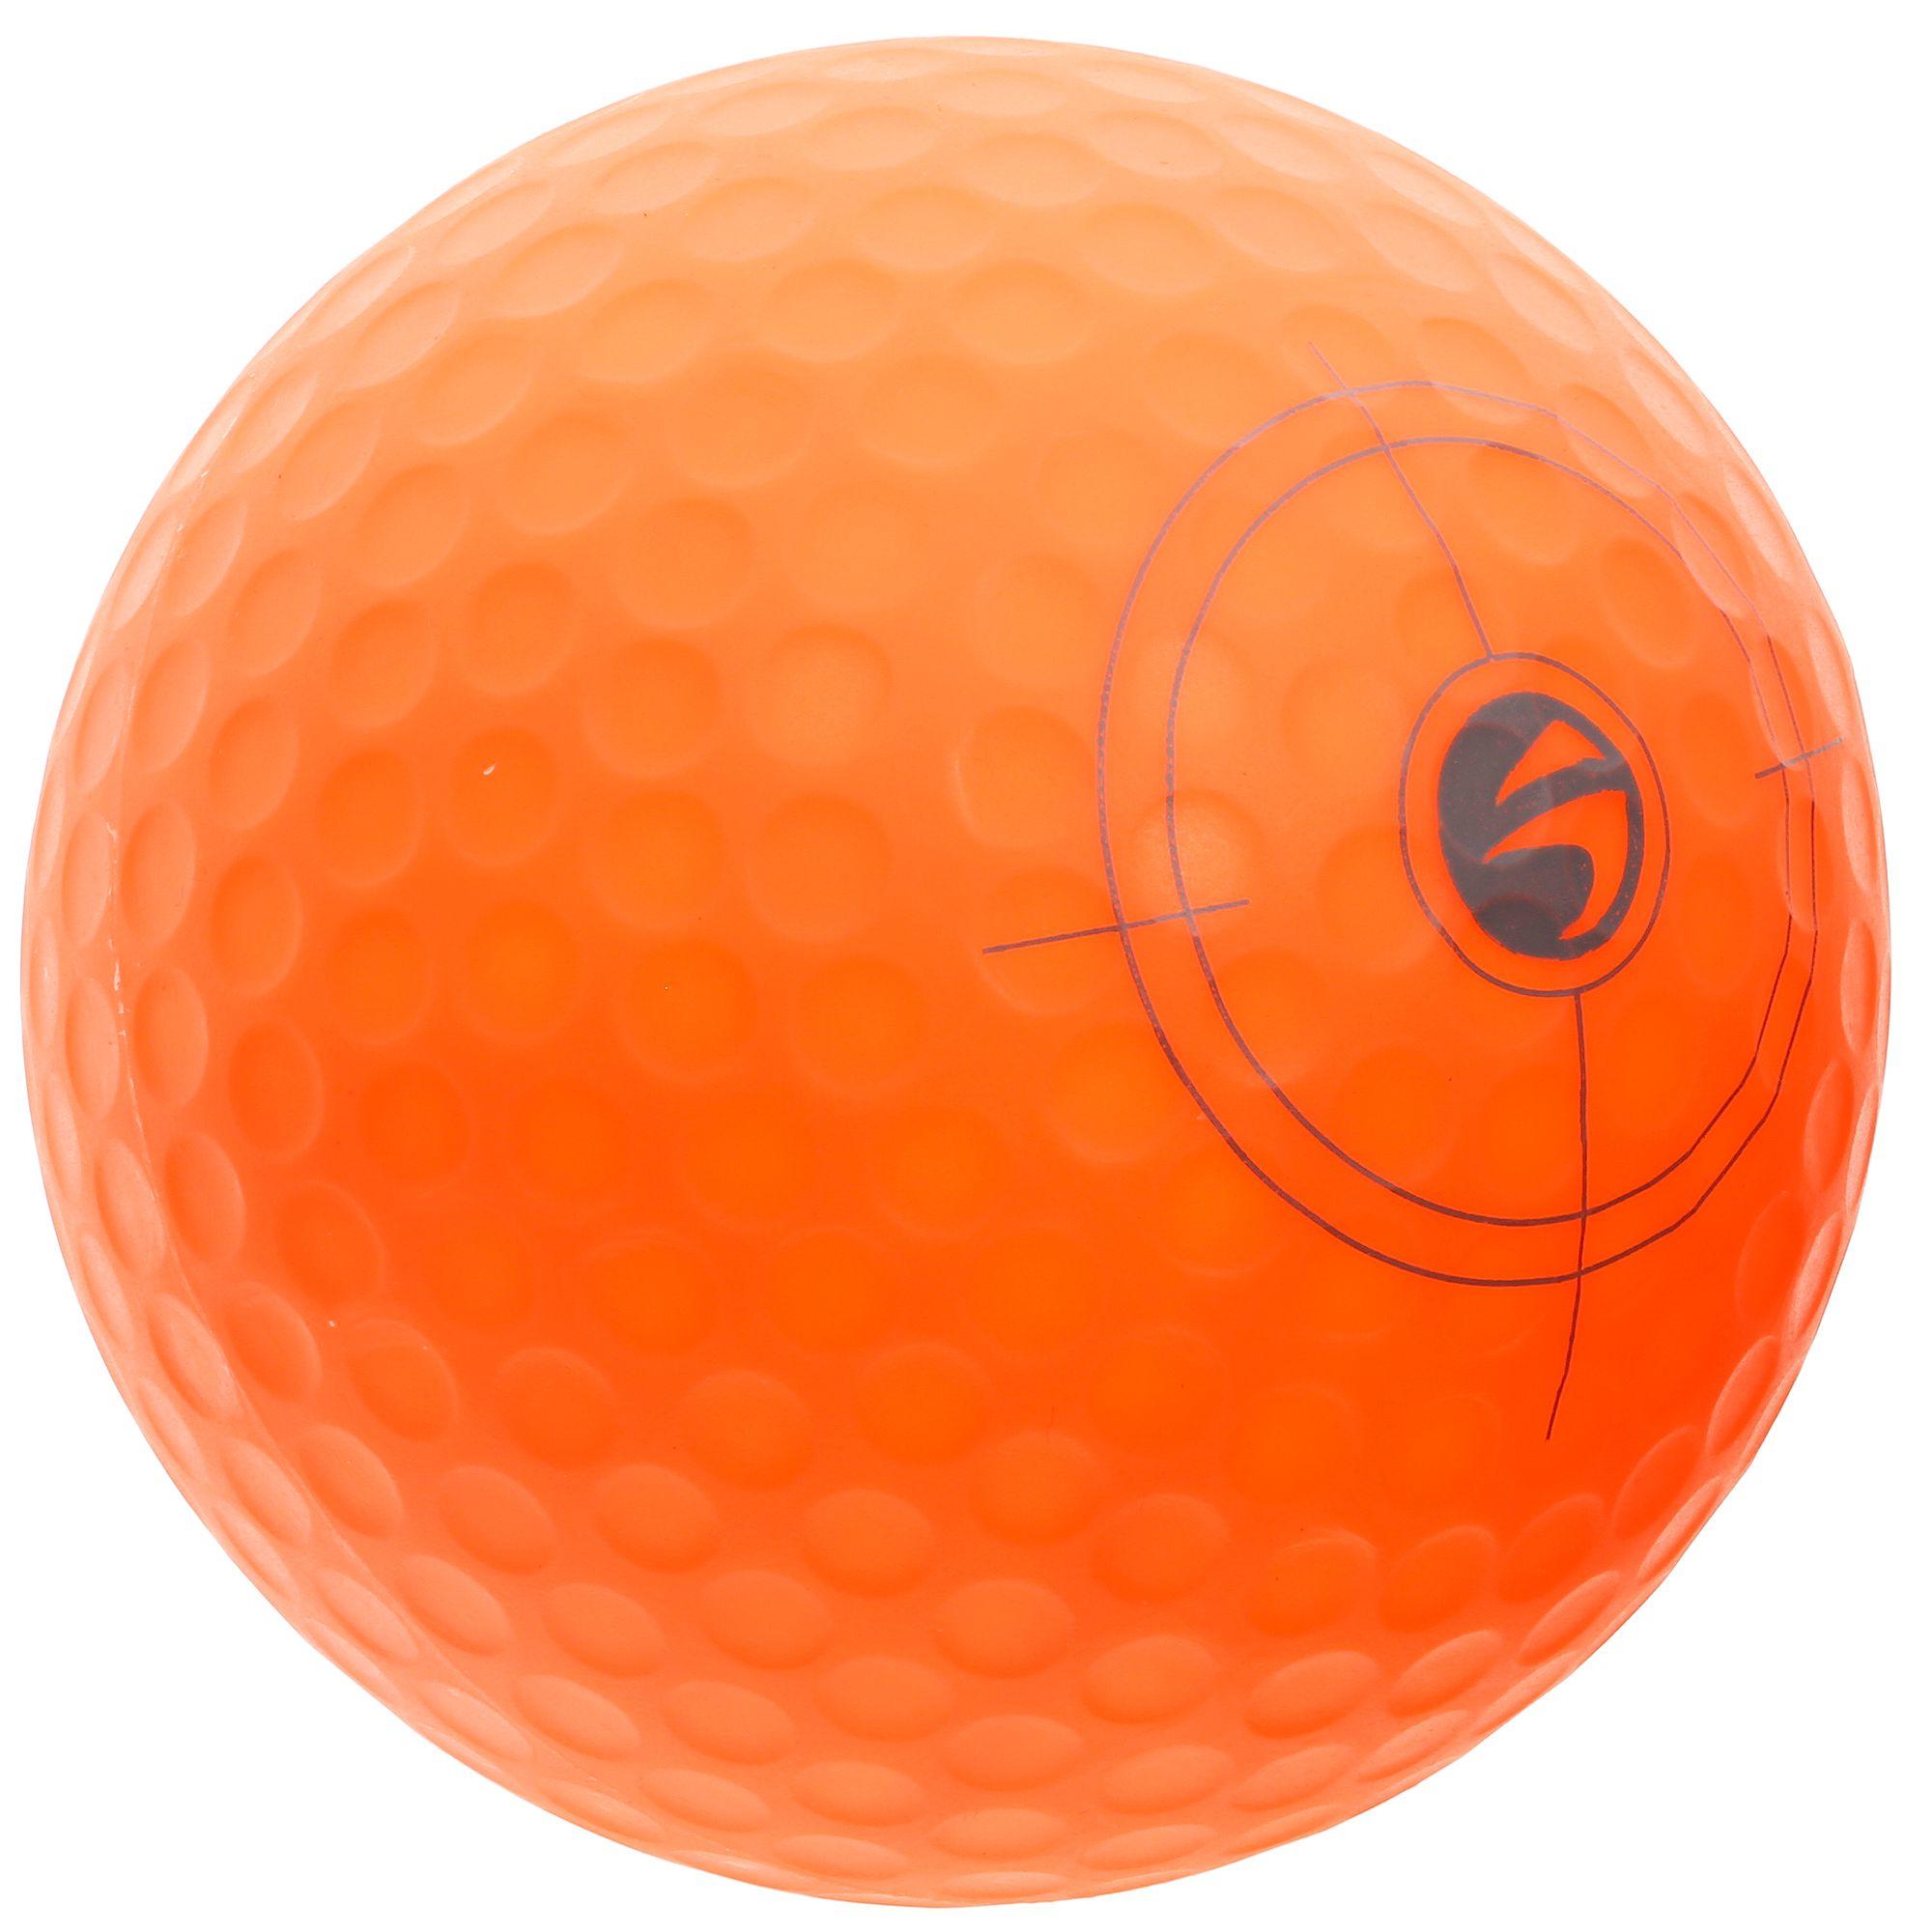 [ส่งฟรี ] ลูกกอล์ฟแบบสูบลมสำหรับเด็กรุ่น 500 Kids Inflatable Golf Ball 500 Kid Golf Set Golf Club Kids Golf Glove Kid